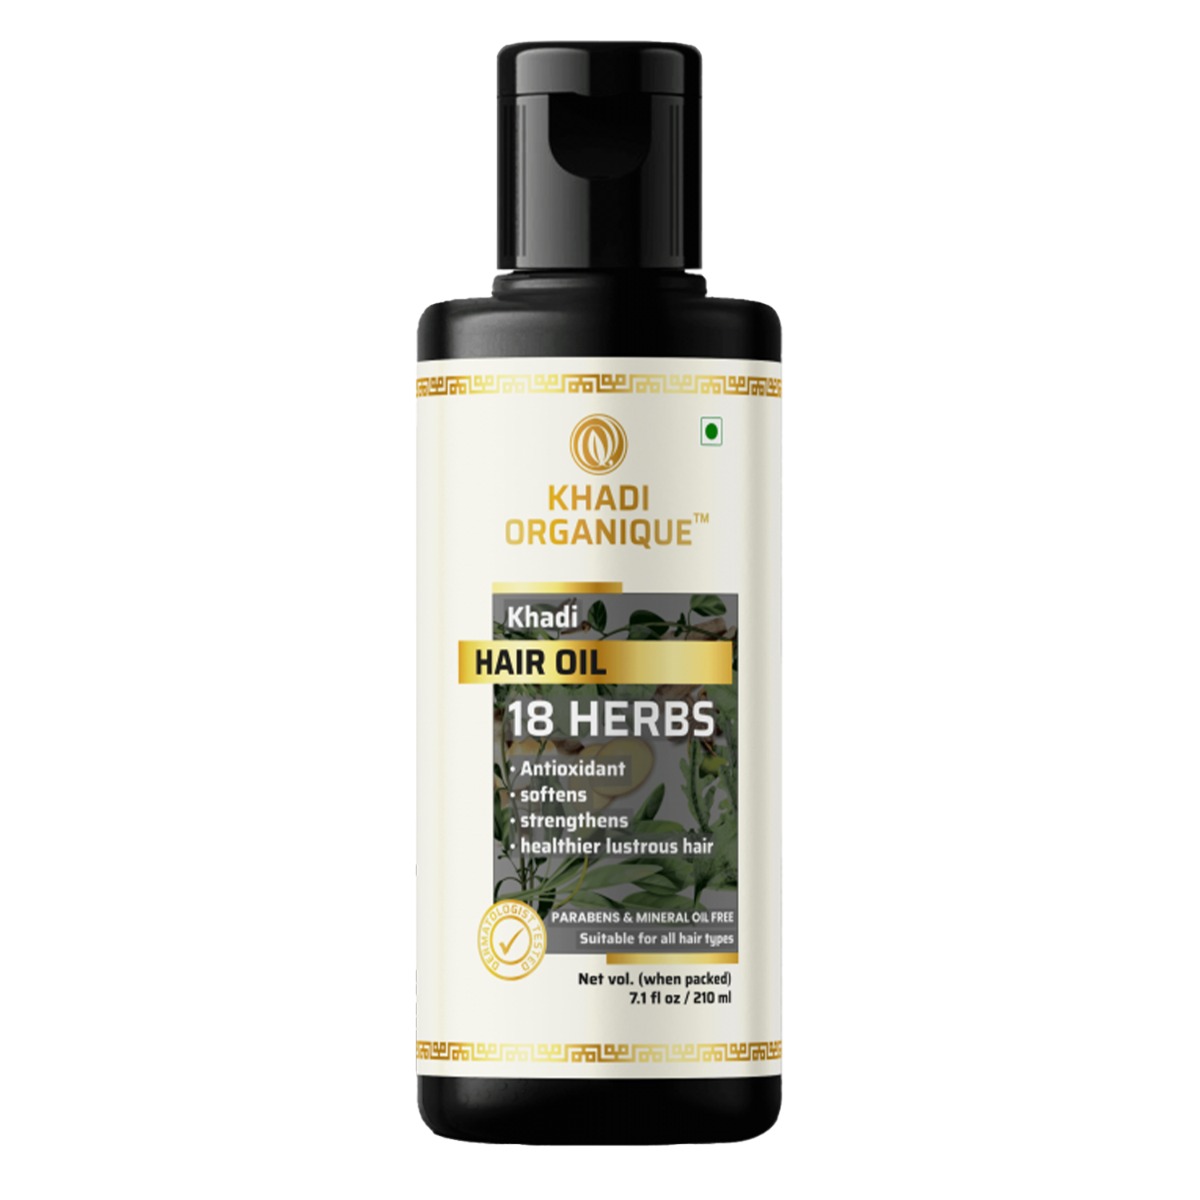 Khadi Organique 18 Herbs Hair Oil, 210ml